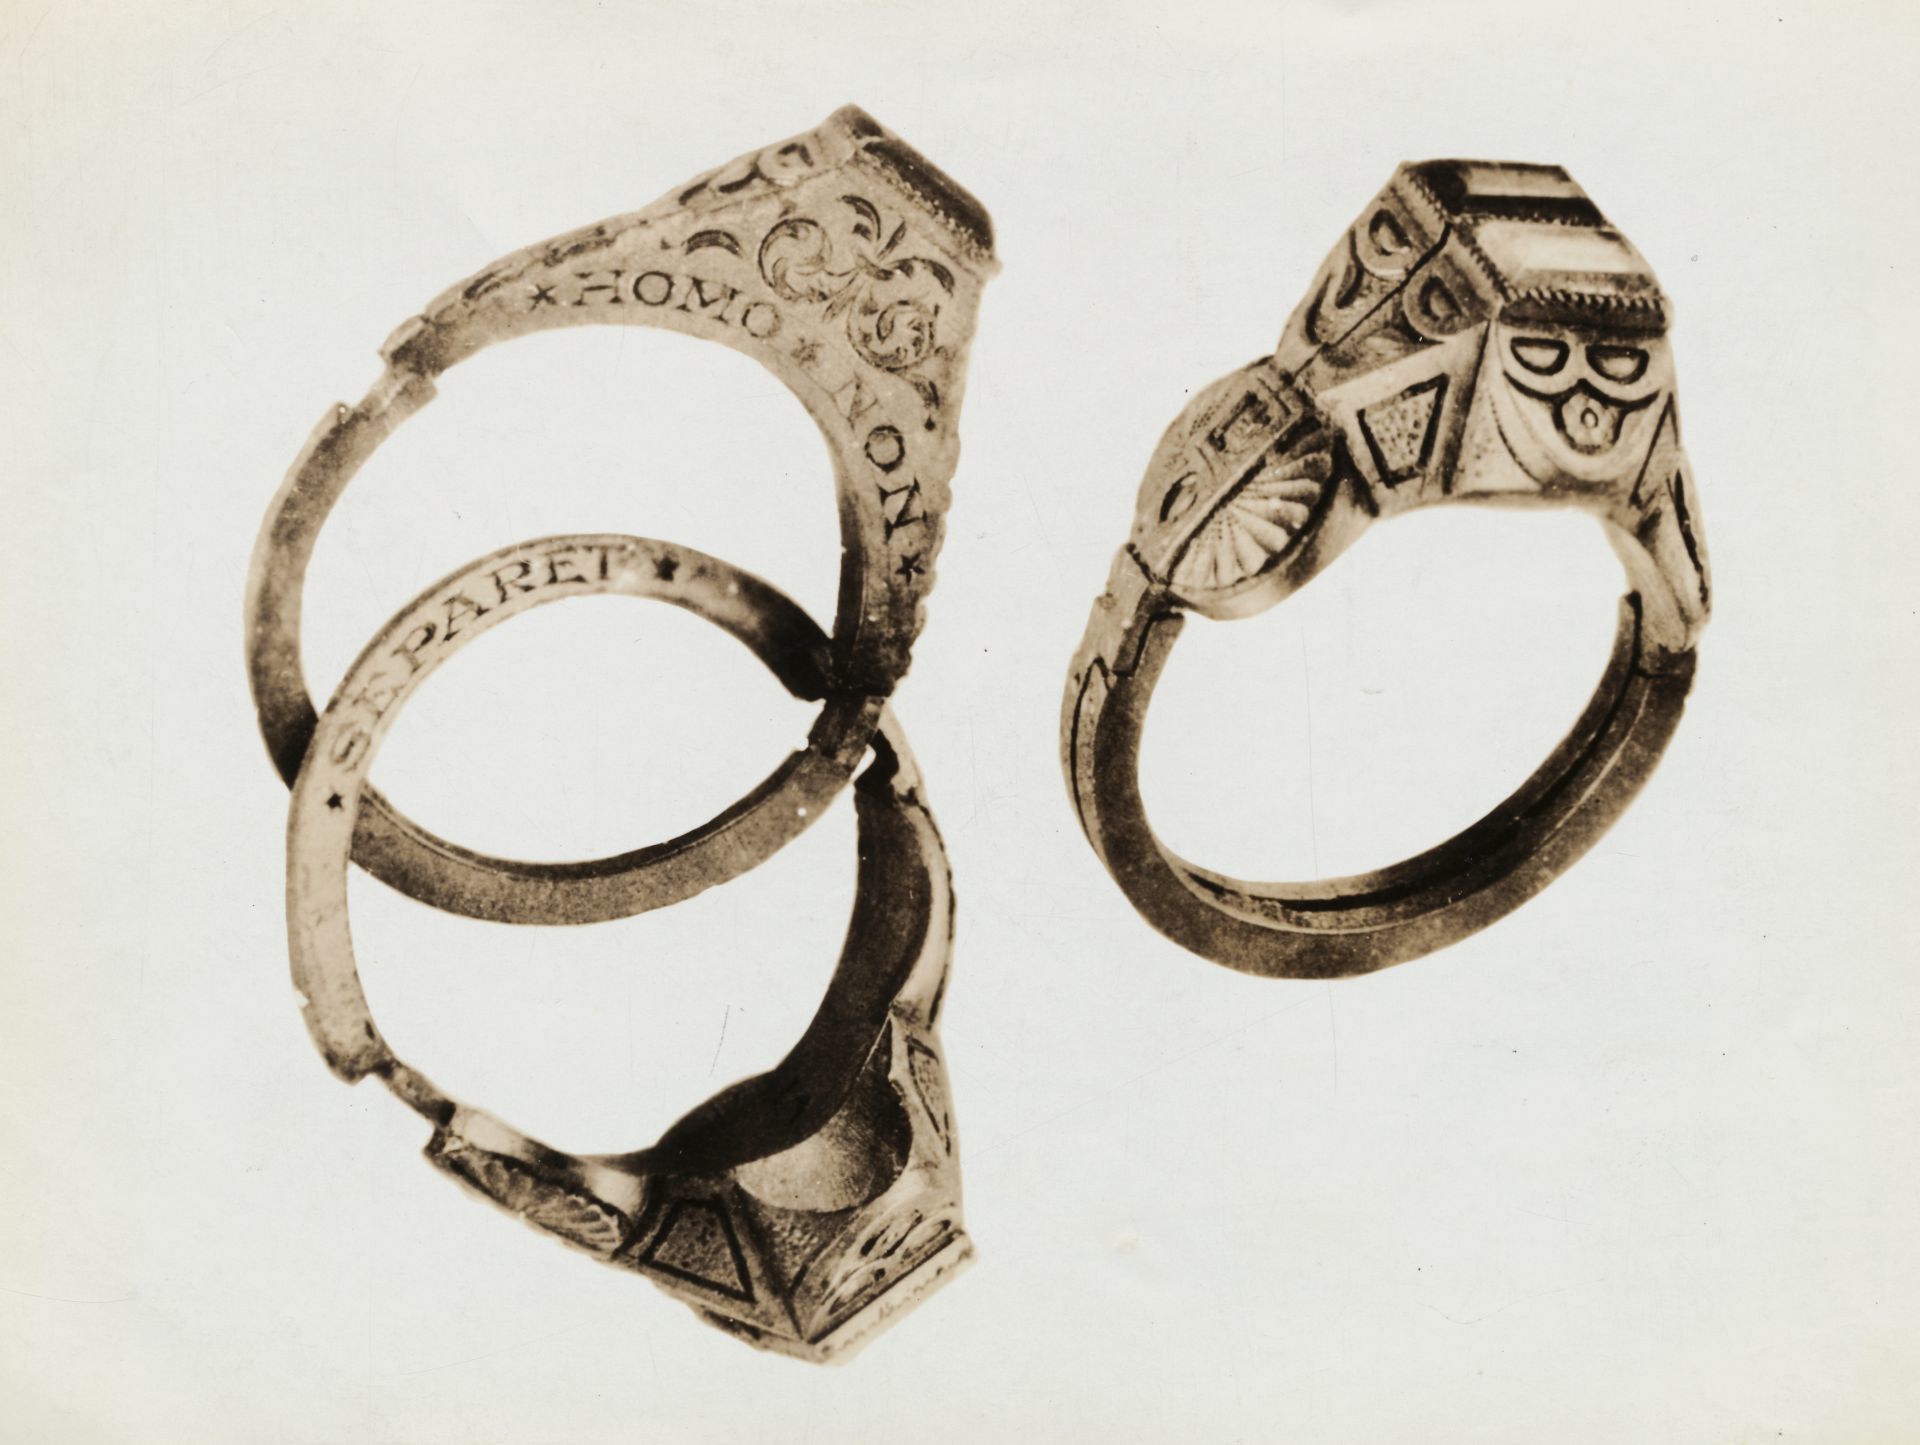 16. századi német ikergyűrű, más néven gimmel gyűrű, rajtuk az ismert bibliai idézettel: "Amit Isten egybekötött, ember szét ne válassza."